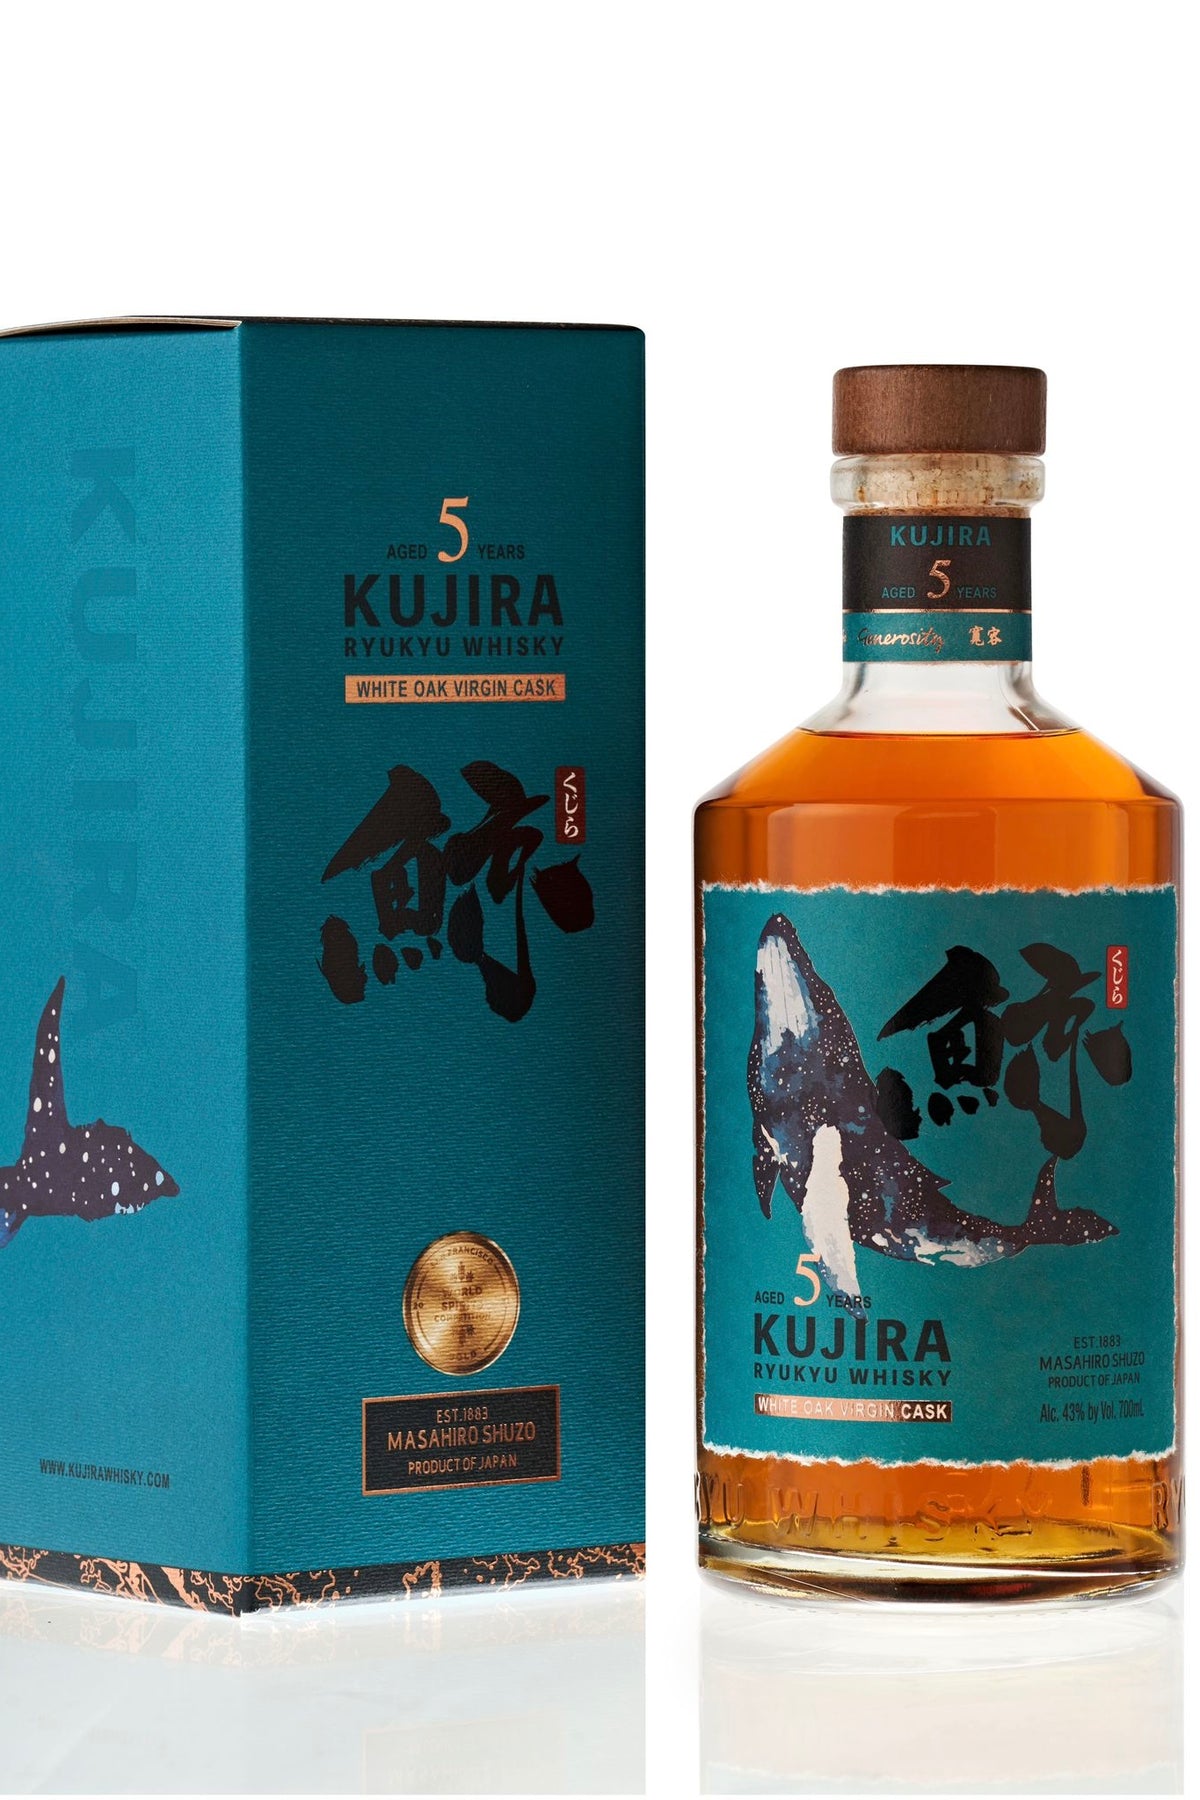 Kujira 5 Year old Japanese Ryukyu Whisky